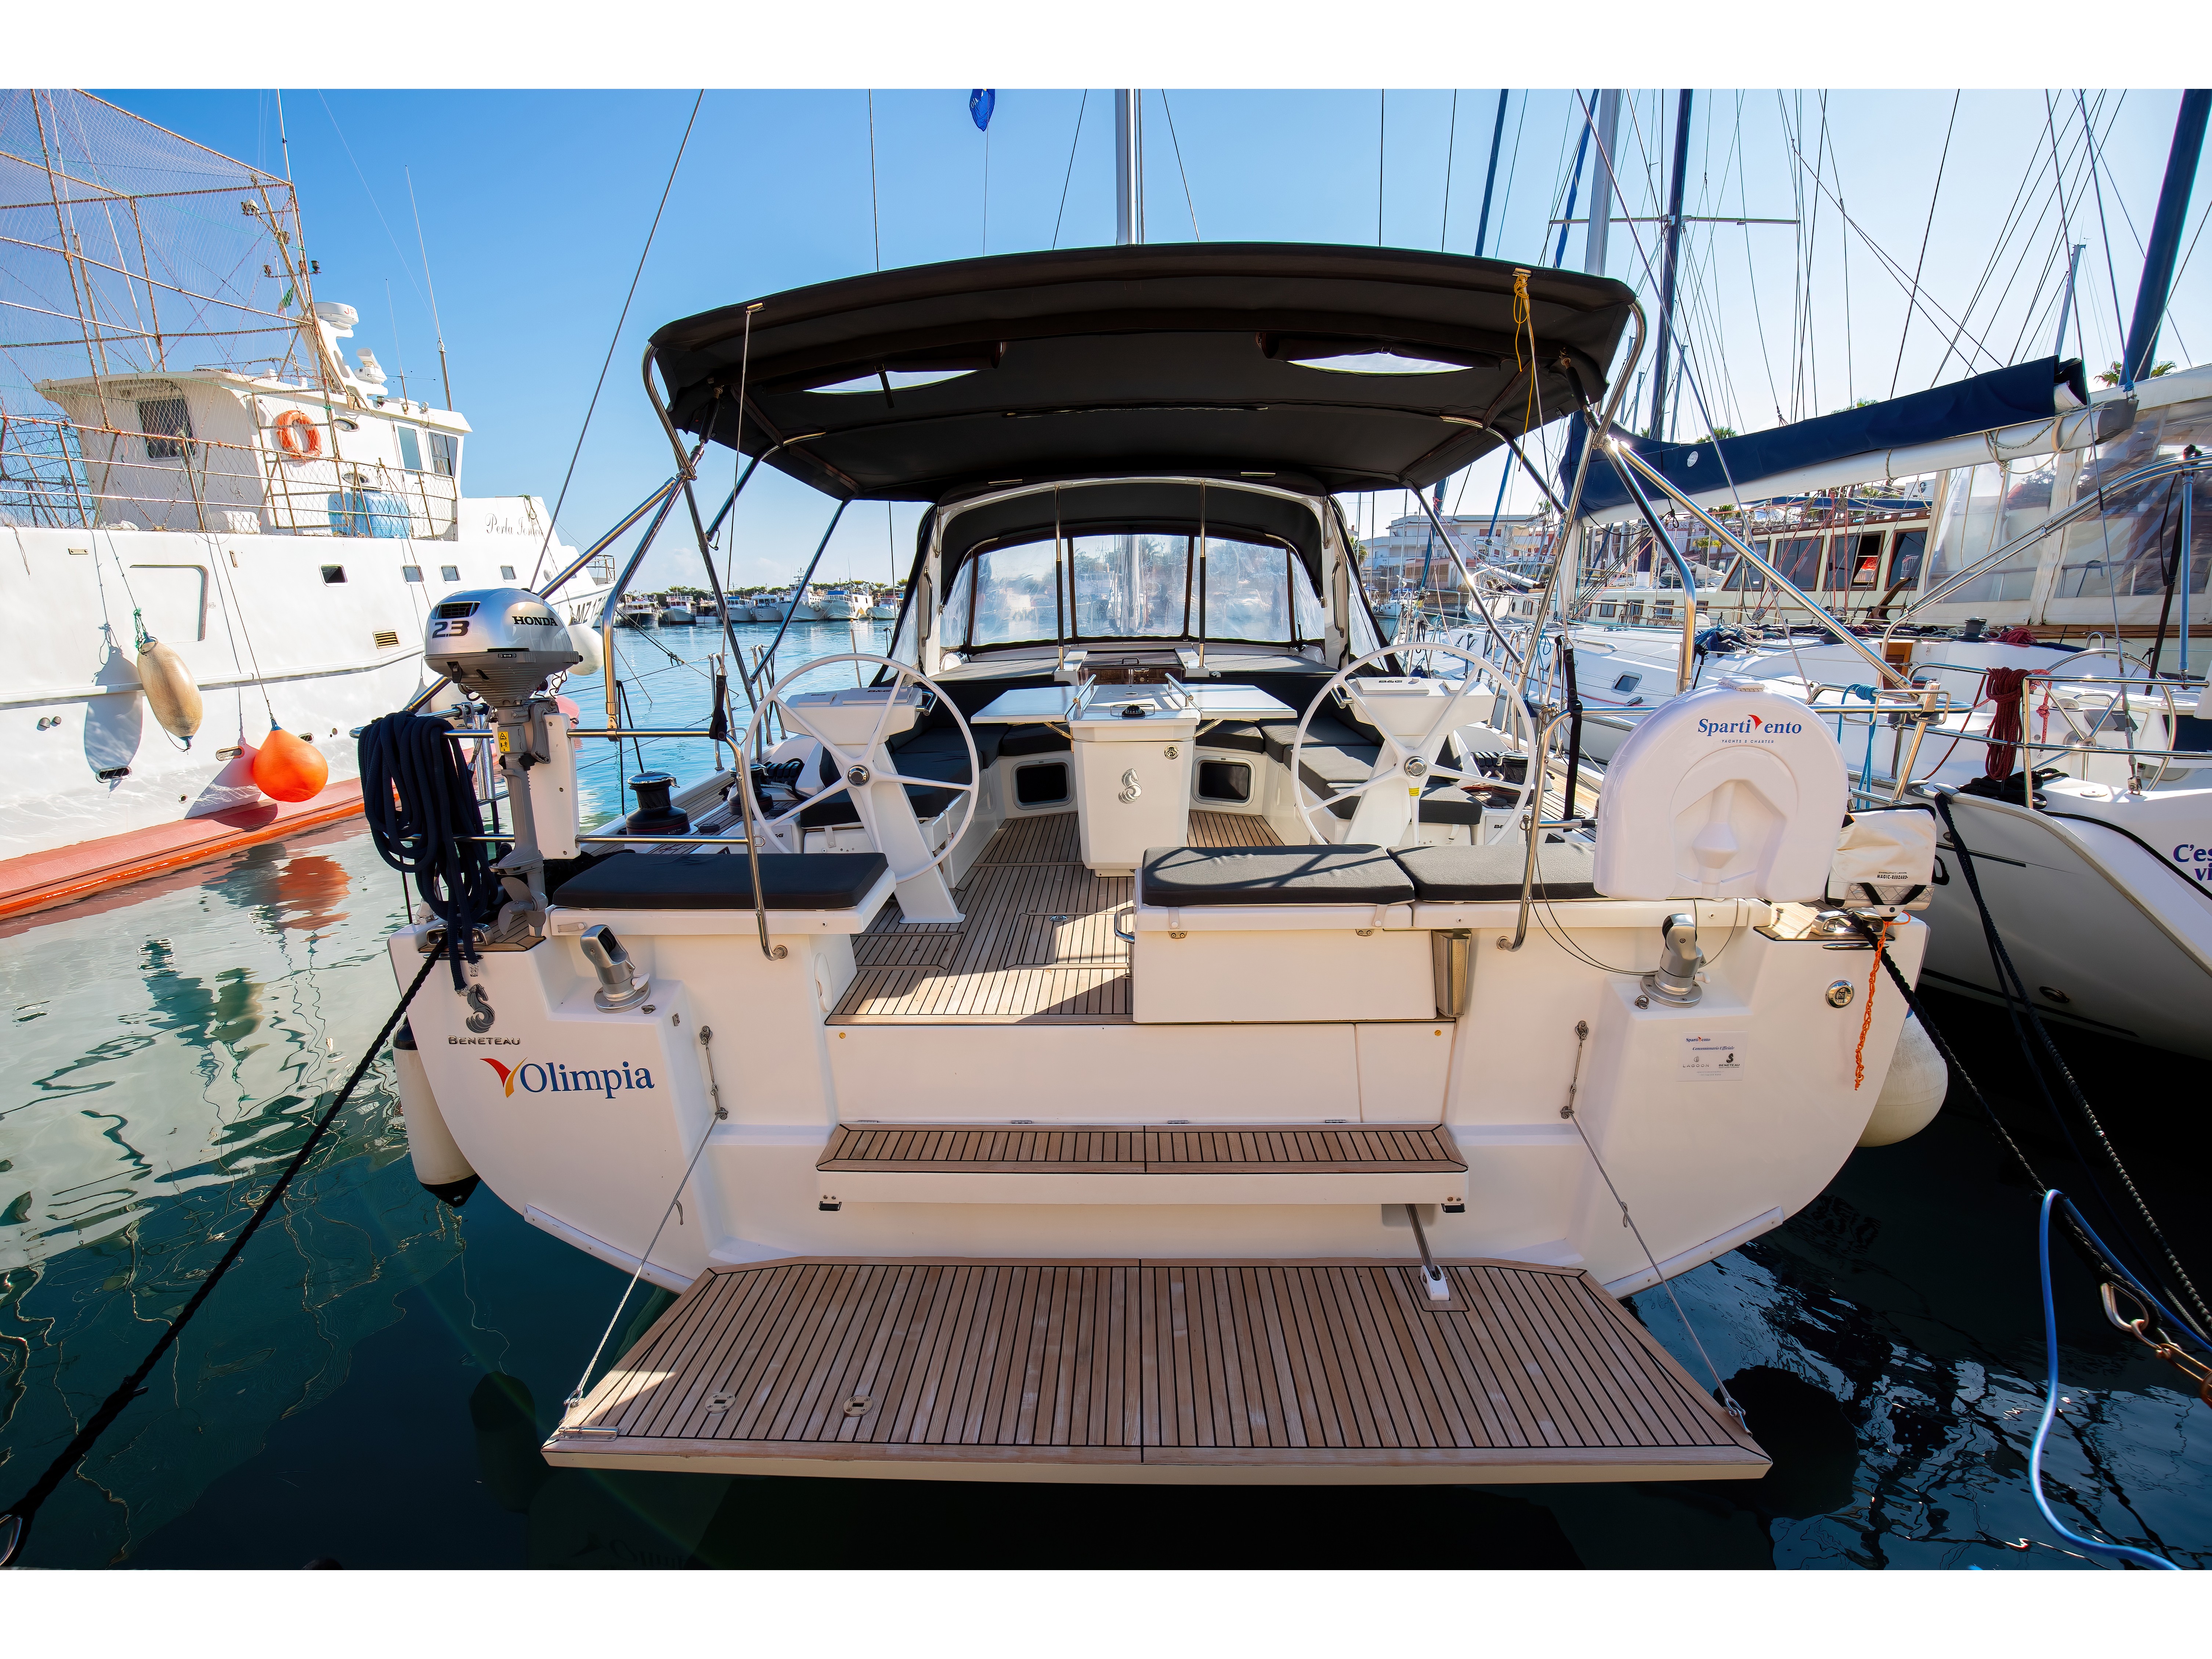 Oceanis 51.1 - Yacht Charter Capo d'Orlando & Boat hire in Italy Sicily Aeolian Islands Capo d'Orlando Capo d'Orlando Marina 3